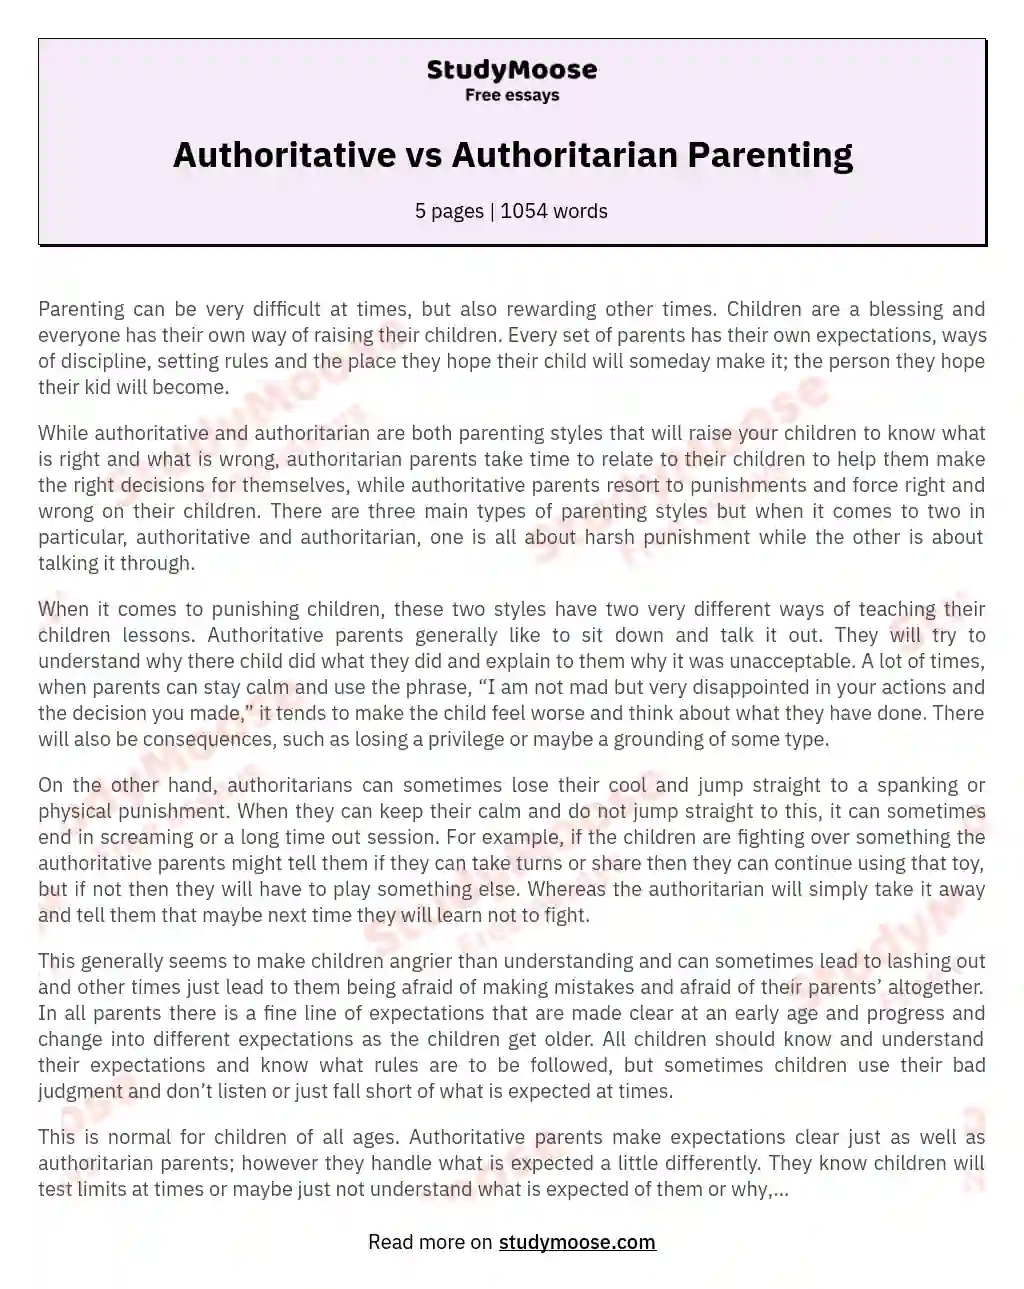 Authoritative vs Authoritarian Parenting essay